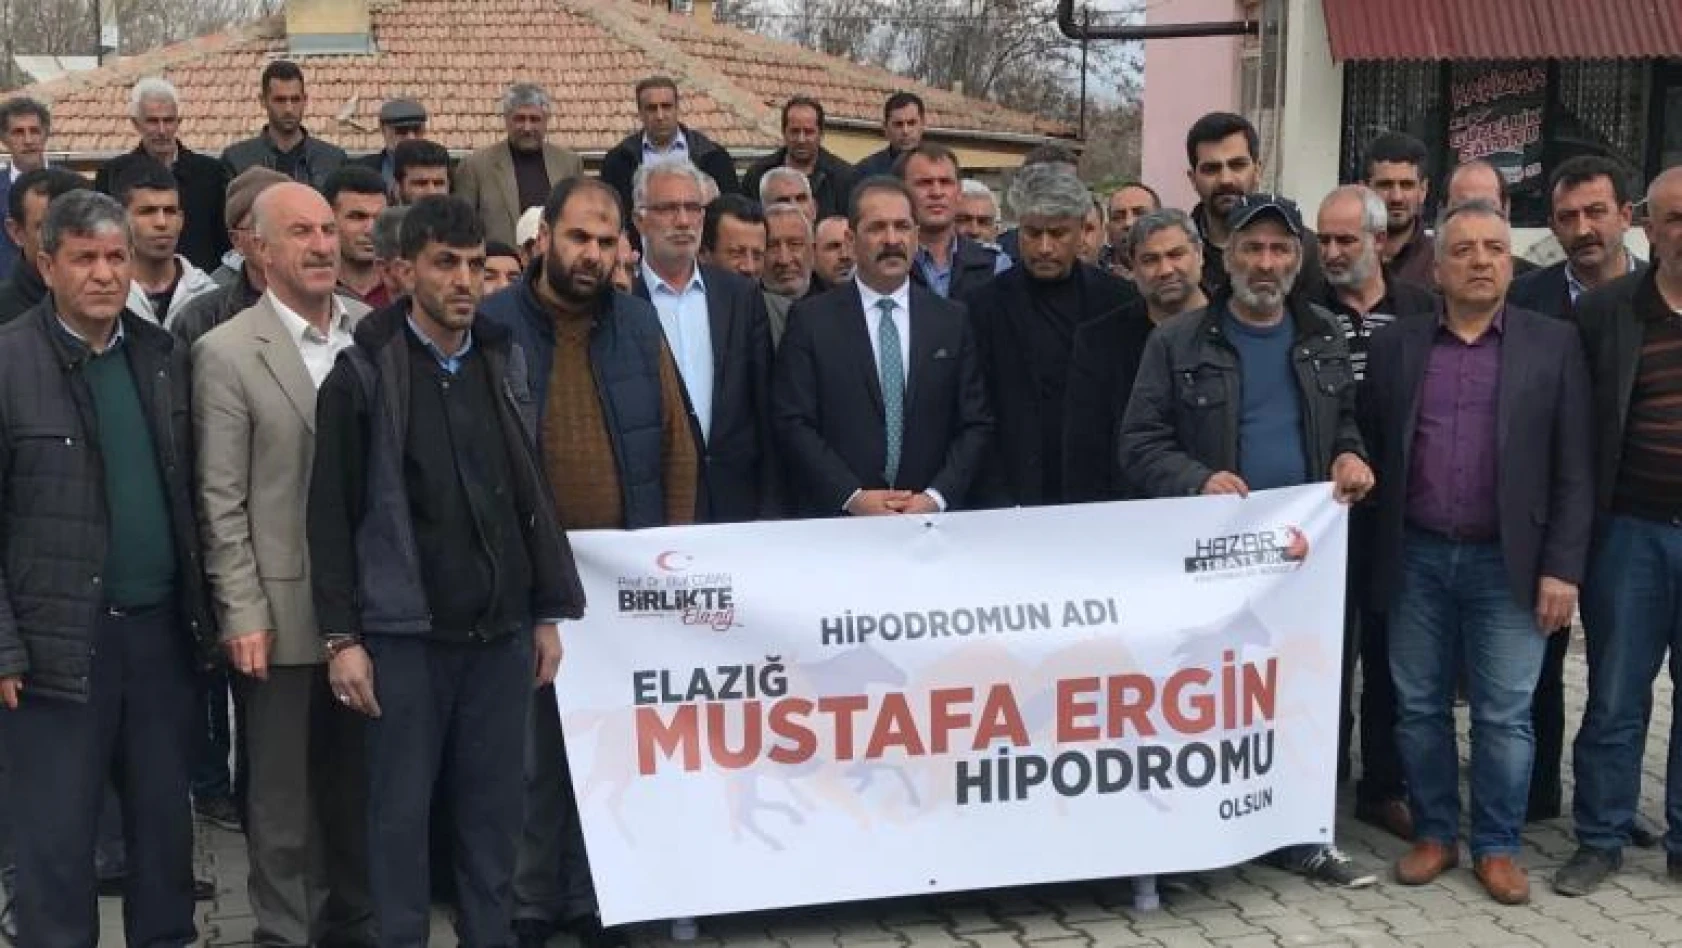 'Mustafa Ergin İsmi Hipodroma Verilsin' Önerisi